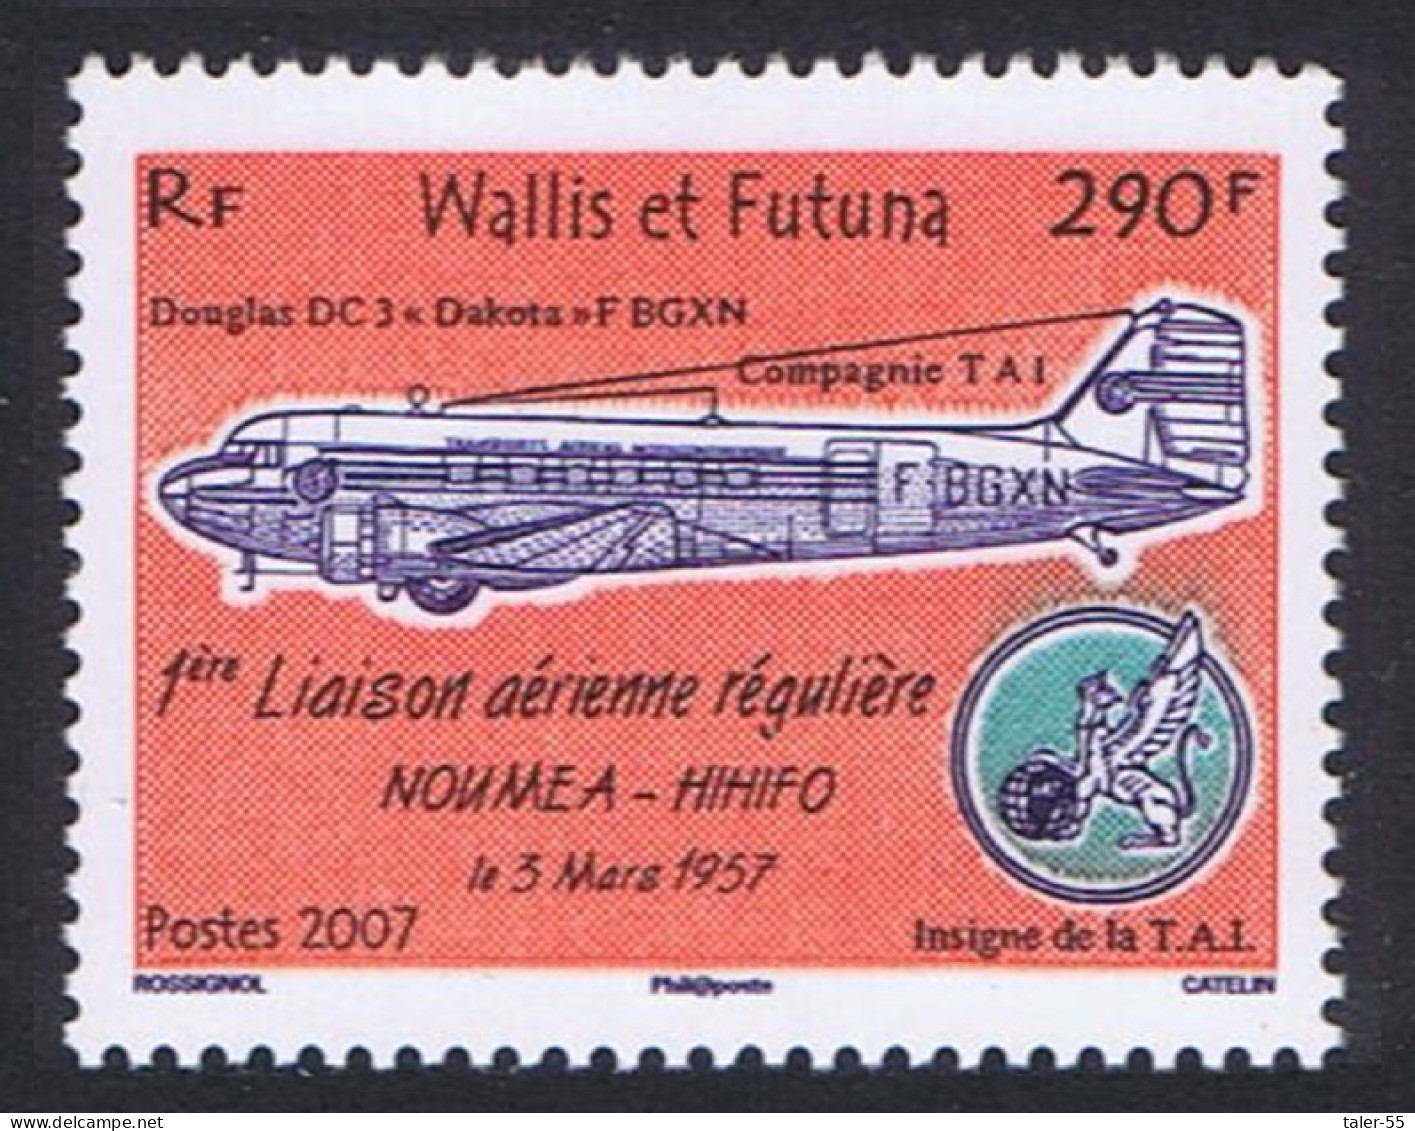 Wallis And Futuna First Regular Flight Noumea-Hihifo 2007 MNH SG#912 - Neufs